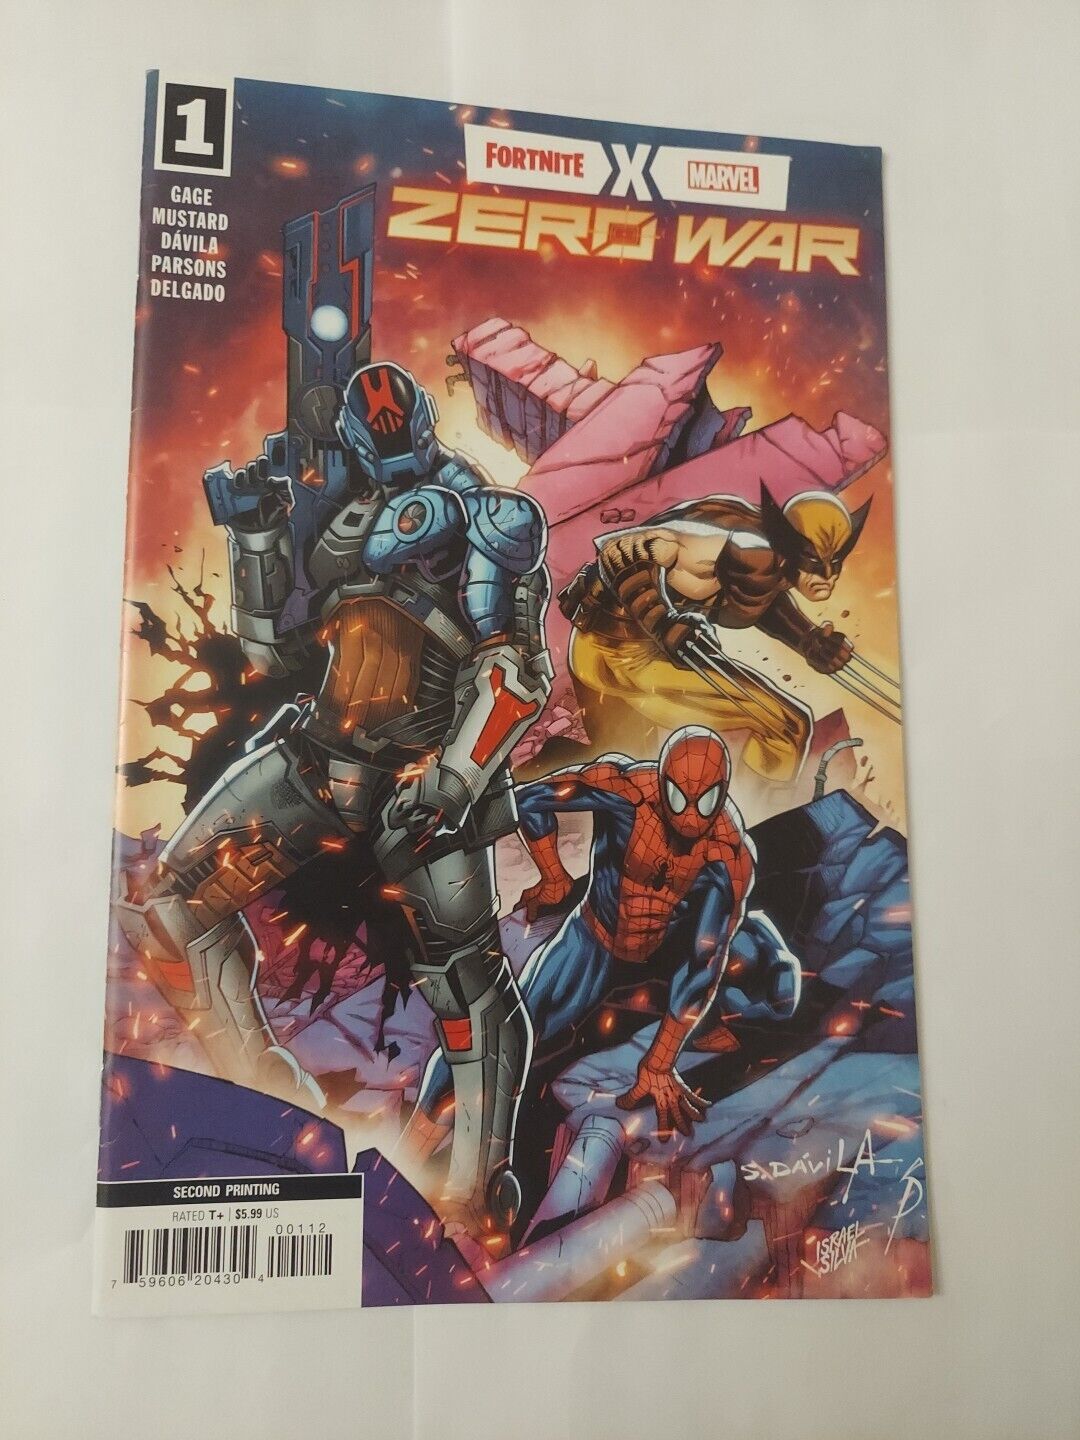 Fortnite X Marvel: Zero War #1 (Marvel, September 2022)